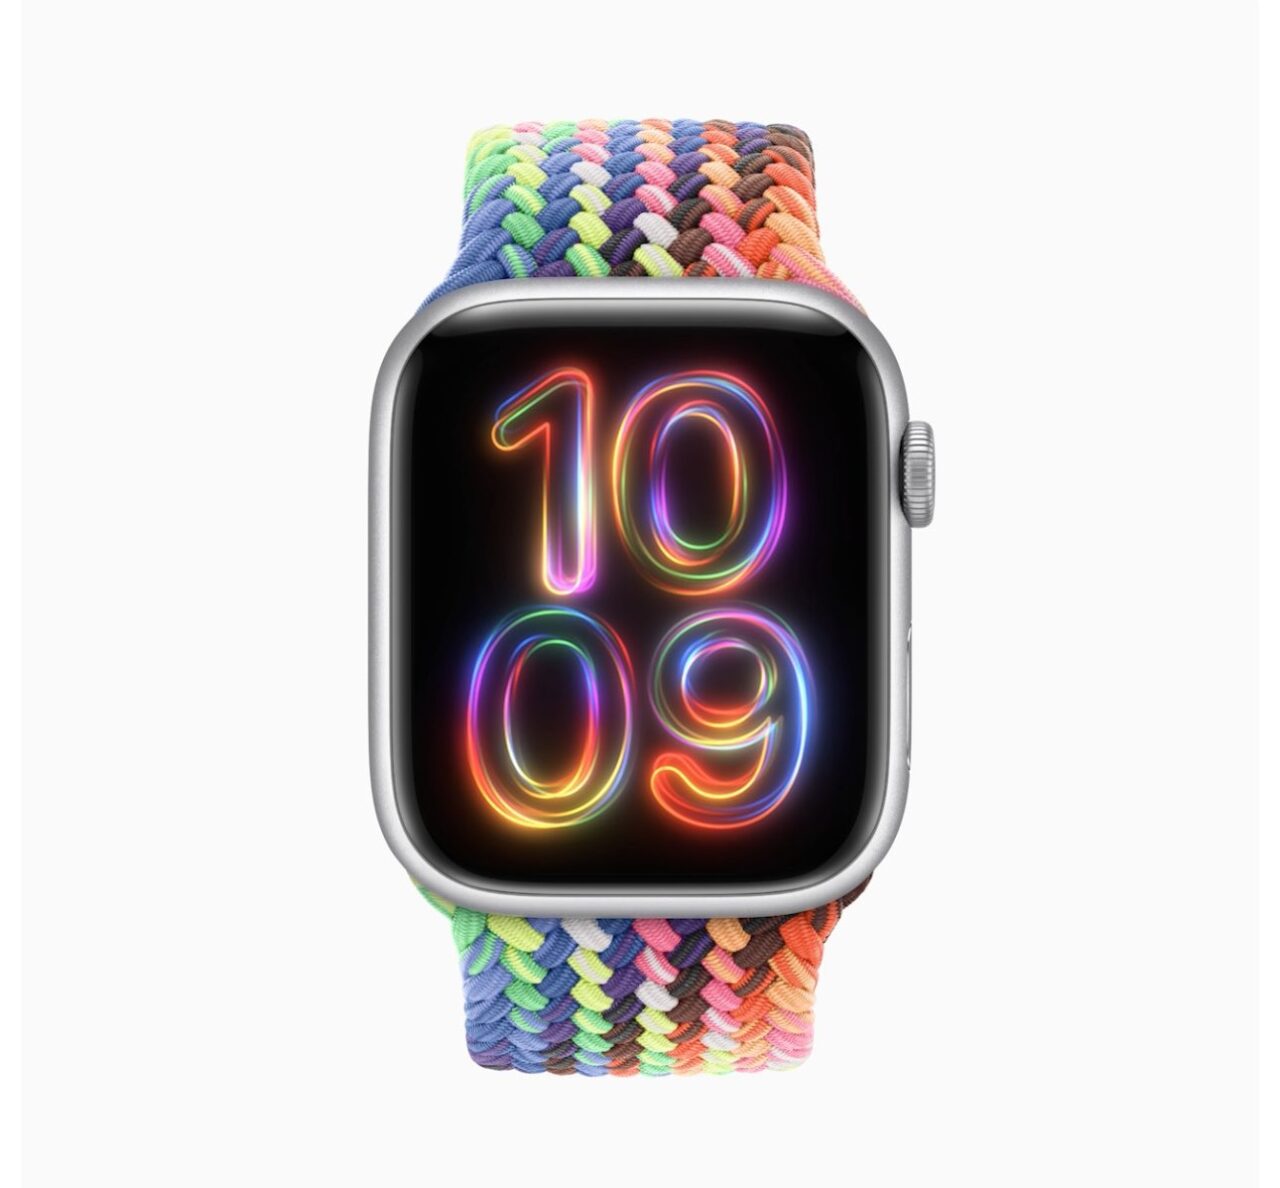 Smartwatch z kolorowym, plecionym paskiem i cyferblatem wyświetlającym neonowe, kolorowe cyfry "10:09".